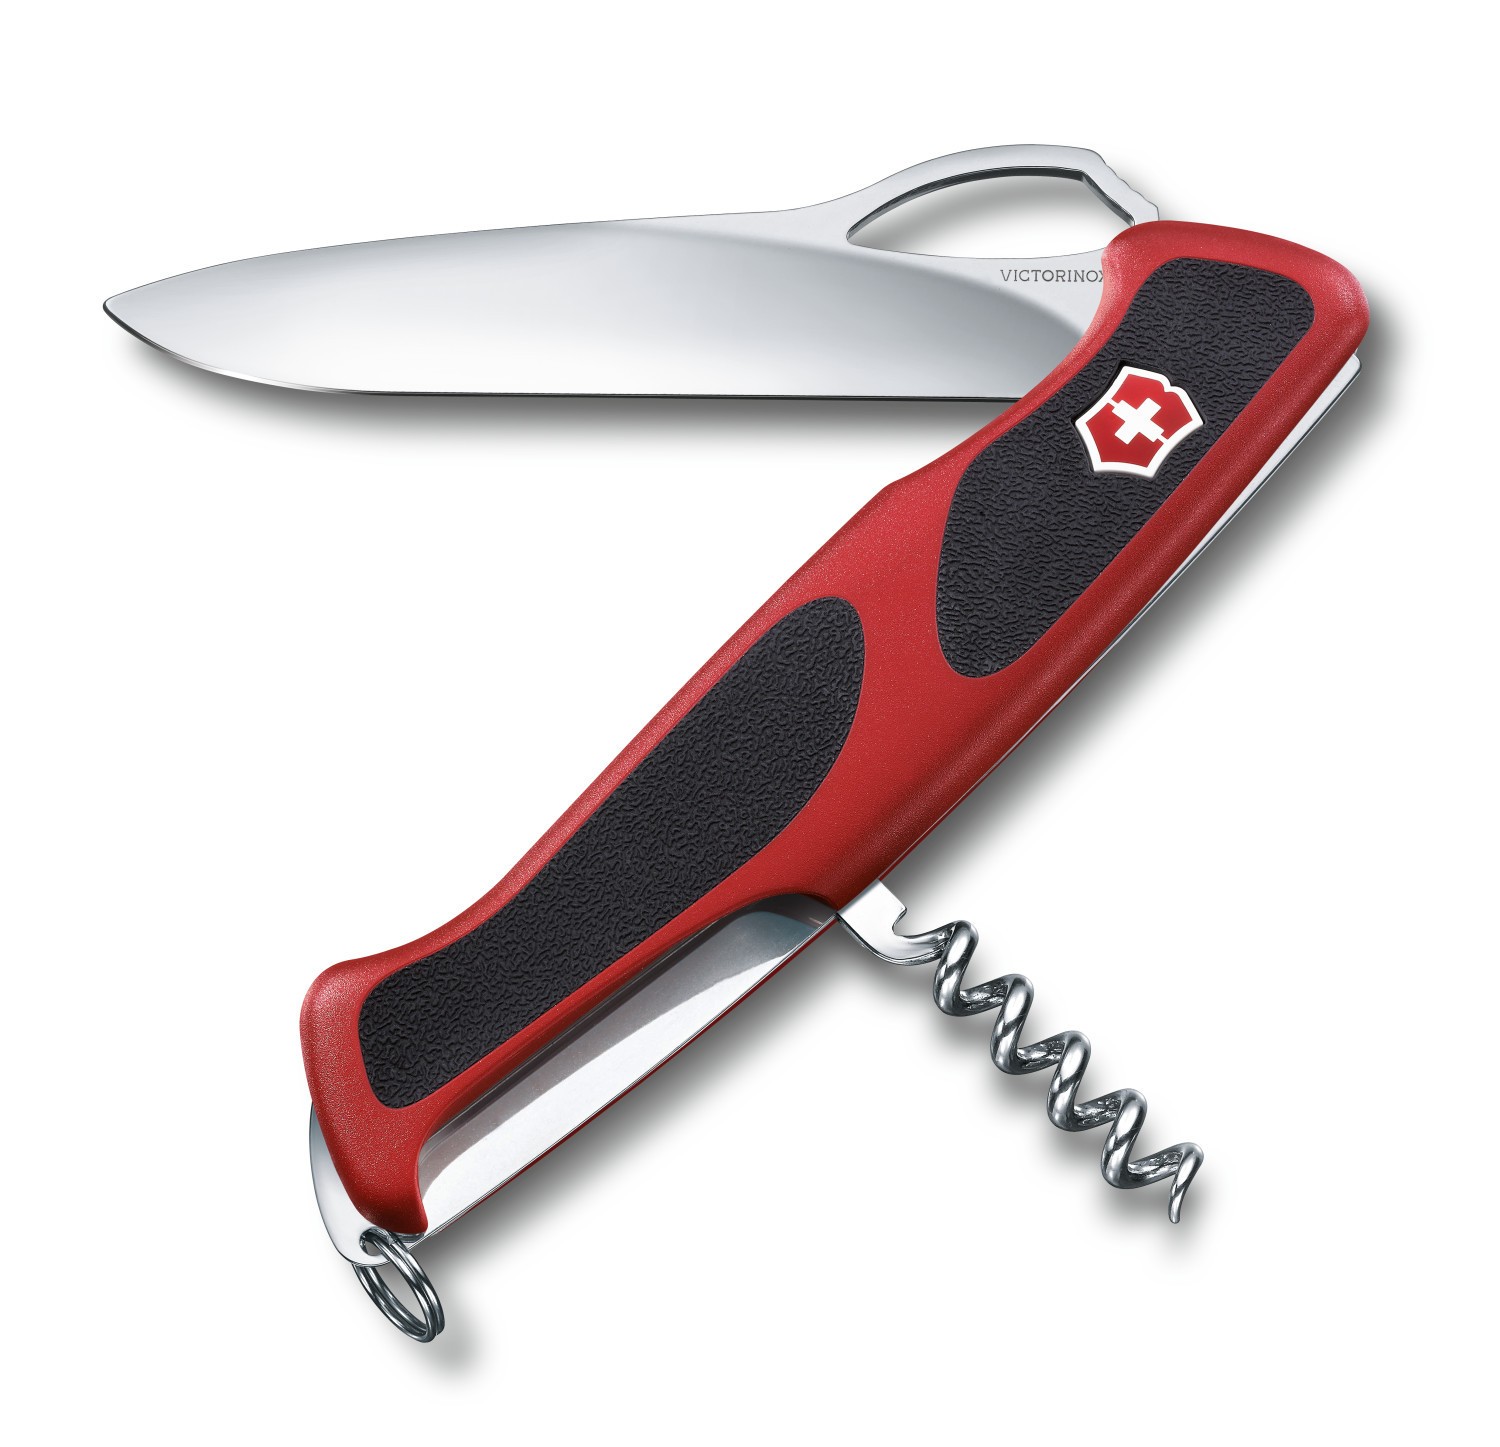 Нож Victorinox Ranger Grip 130мм 5 функций красный/черный - фото 1